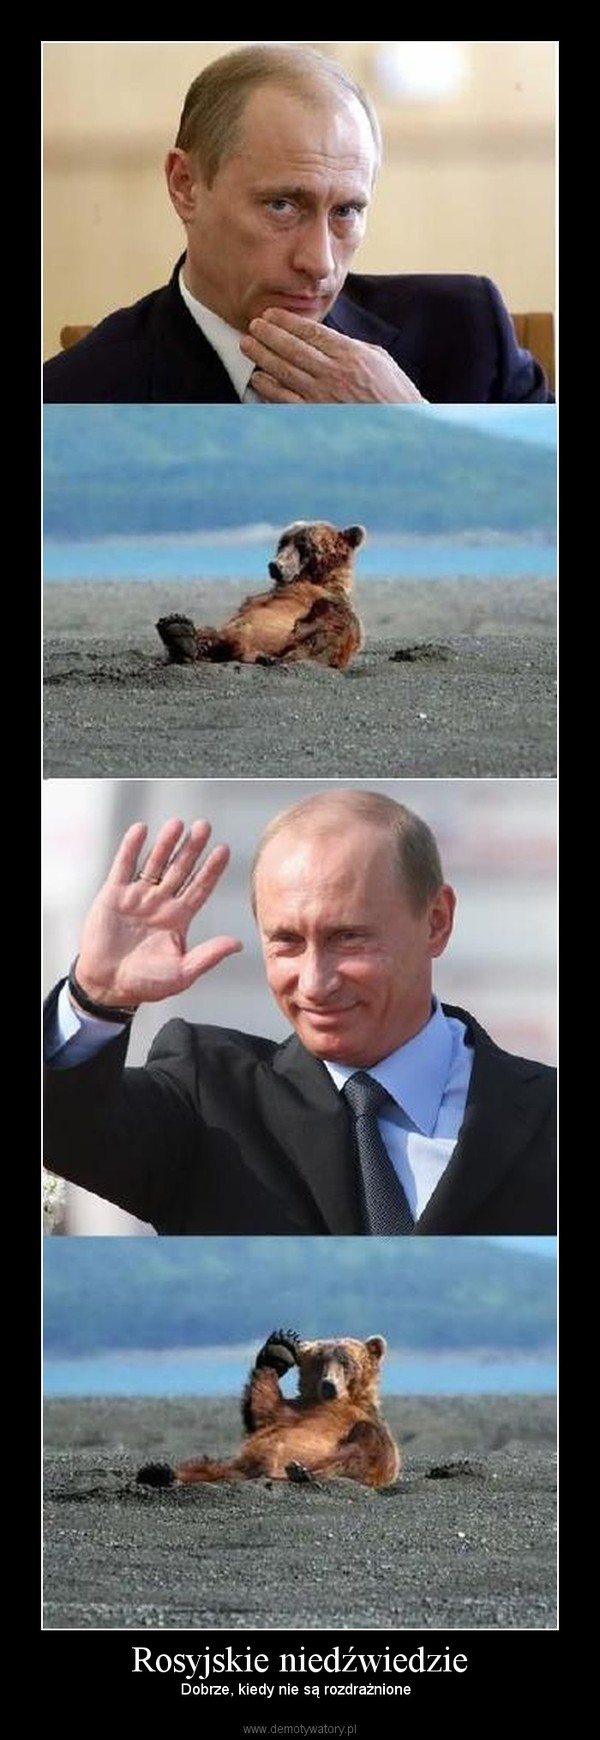 Rosyjskie niedźwiedzie – Dobrze, kiedy nie są rozdrażnione   